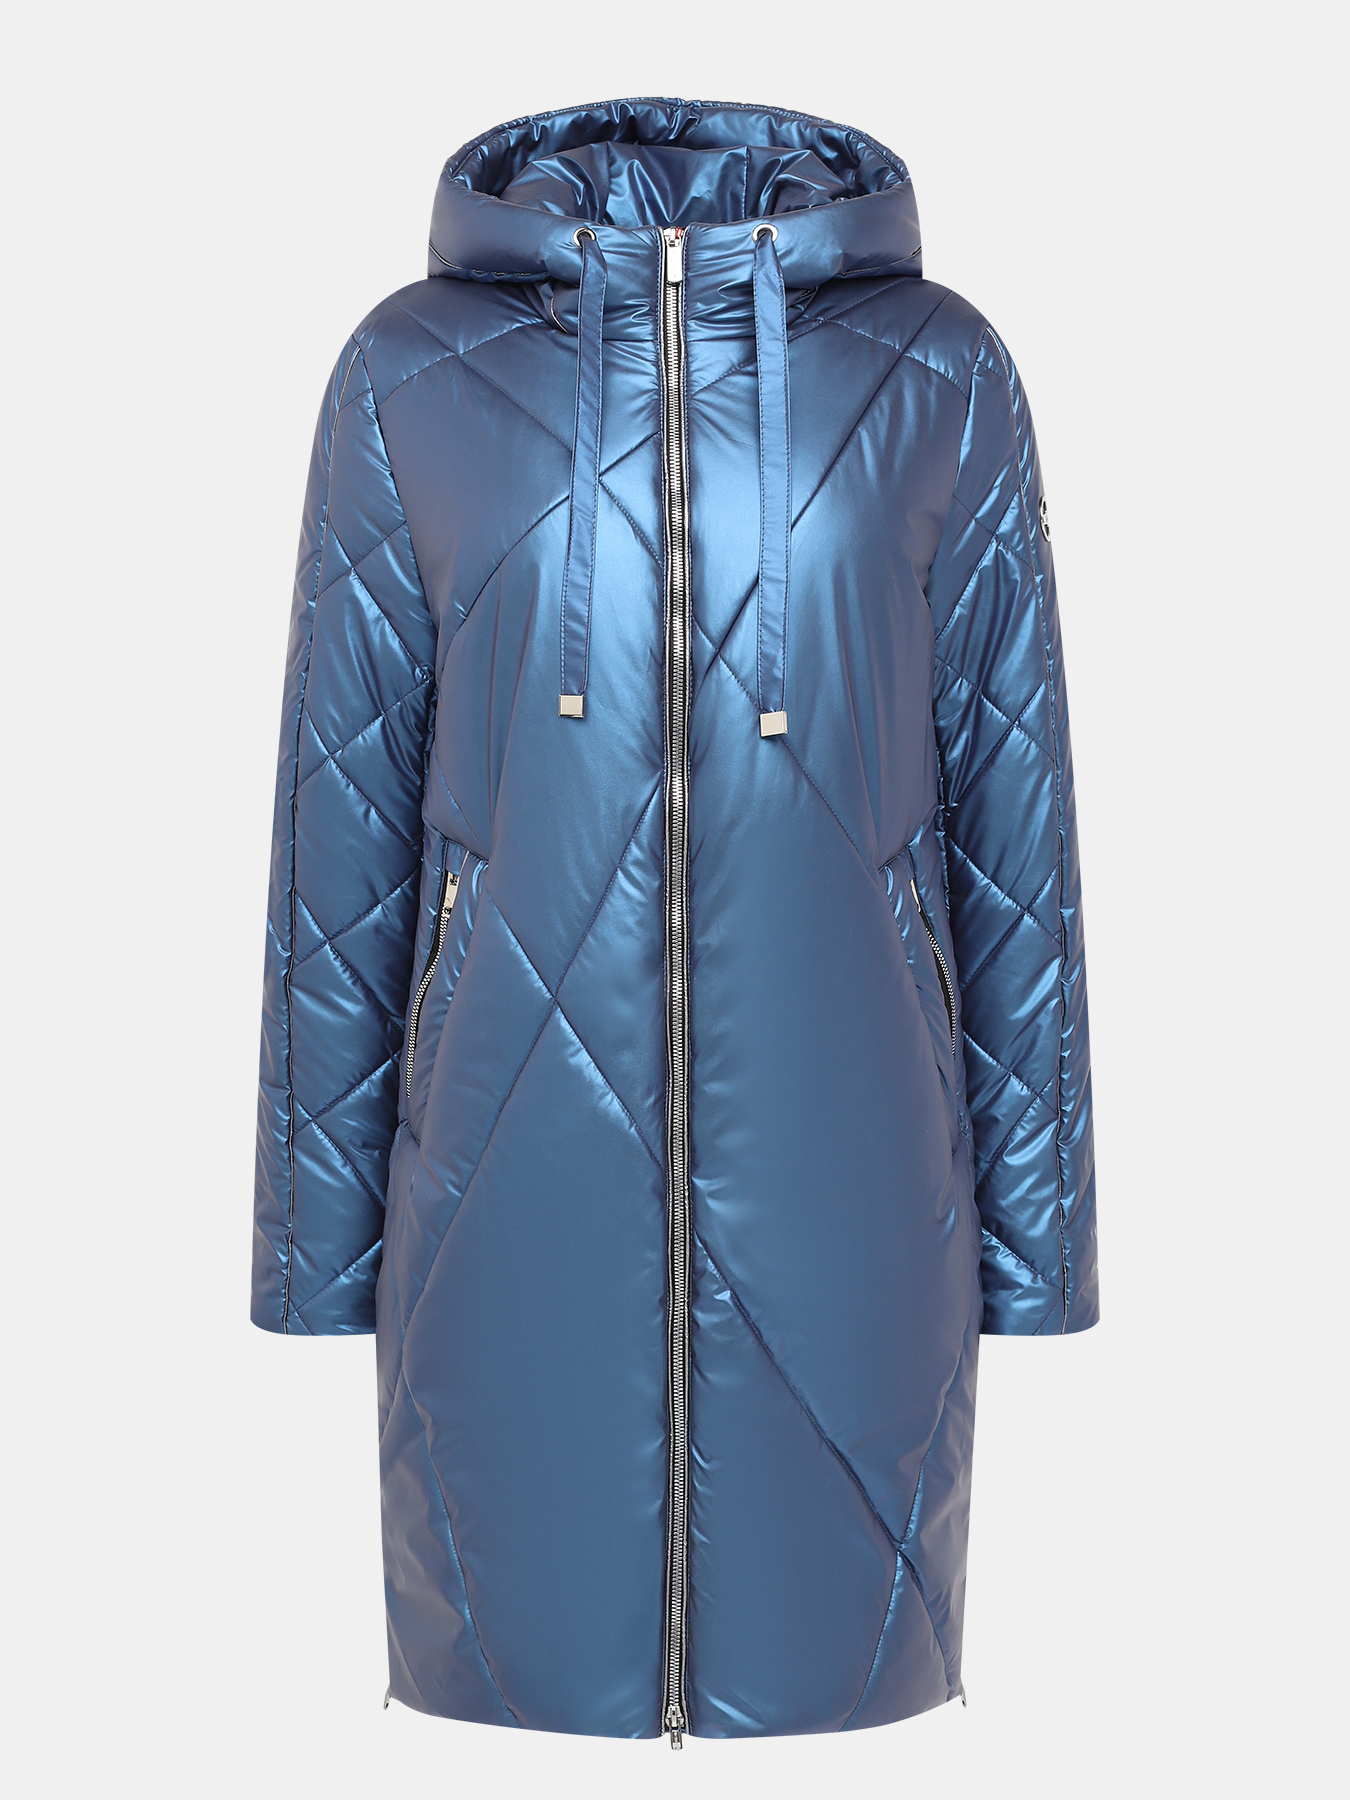 Пальто зимнее Maritta 433572-018, цвет синий, размер 36